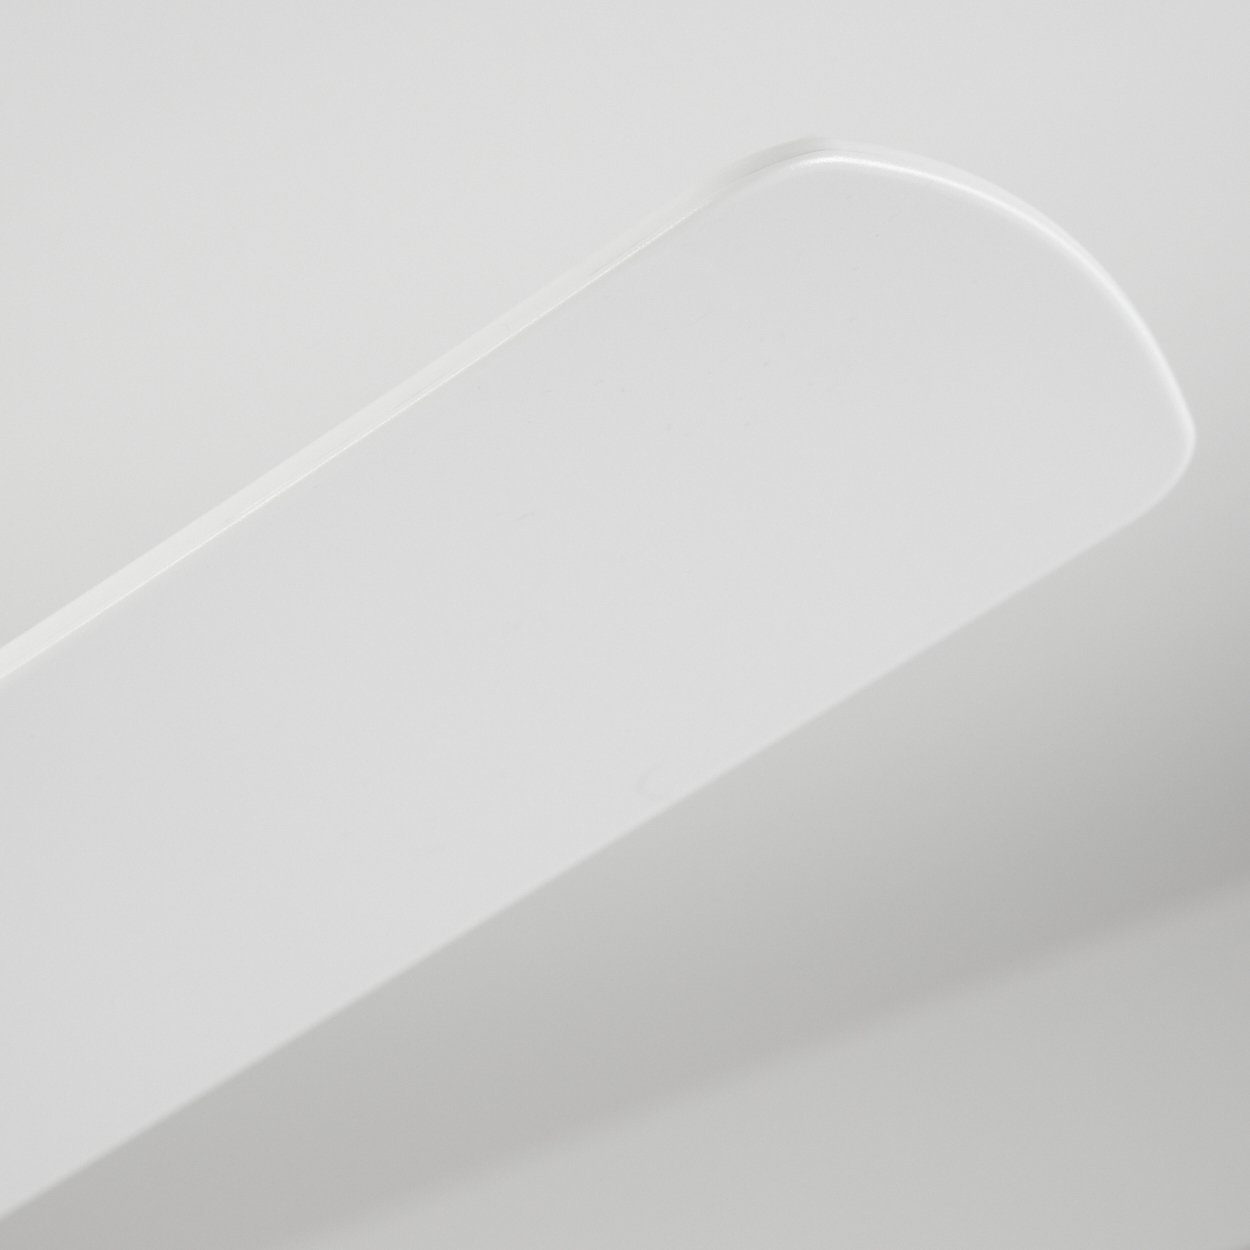 Metall/Kunststoff Deckenventilator mit Deckenlampe »Guardiella« Weiß hofstein Ventilator aus in